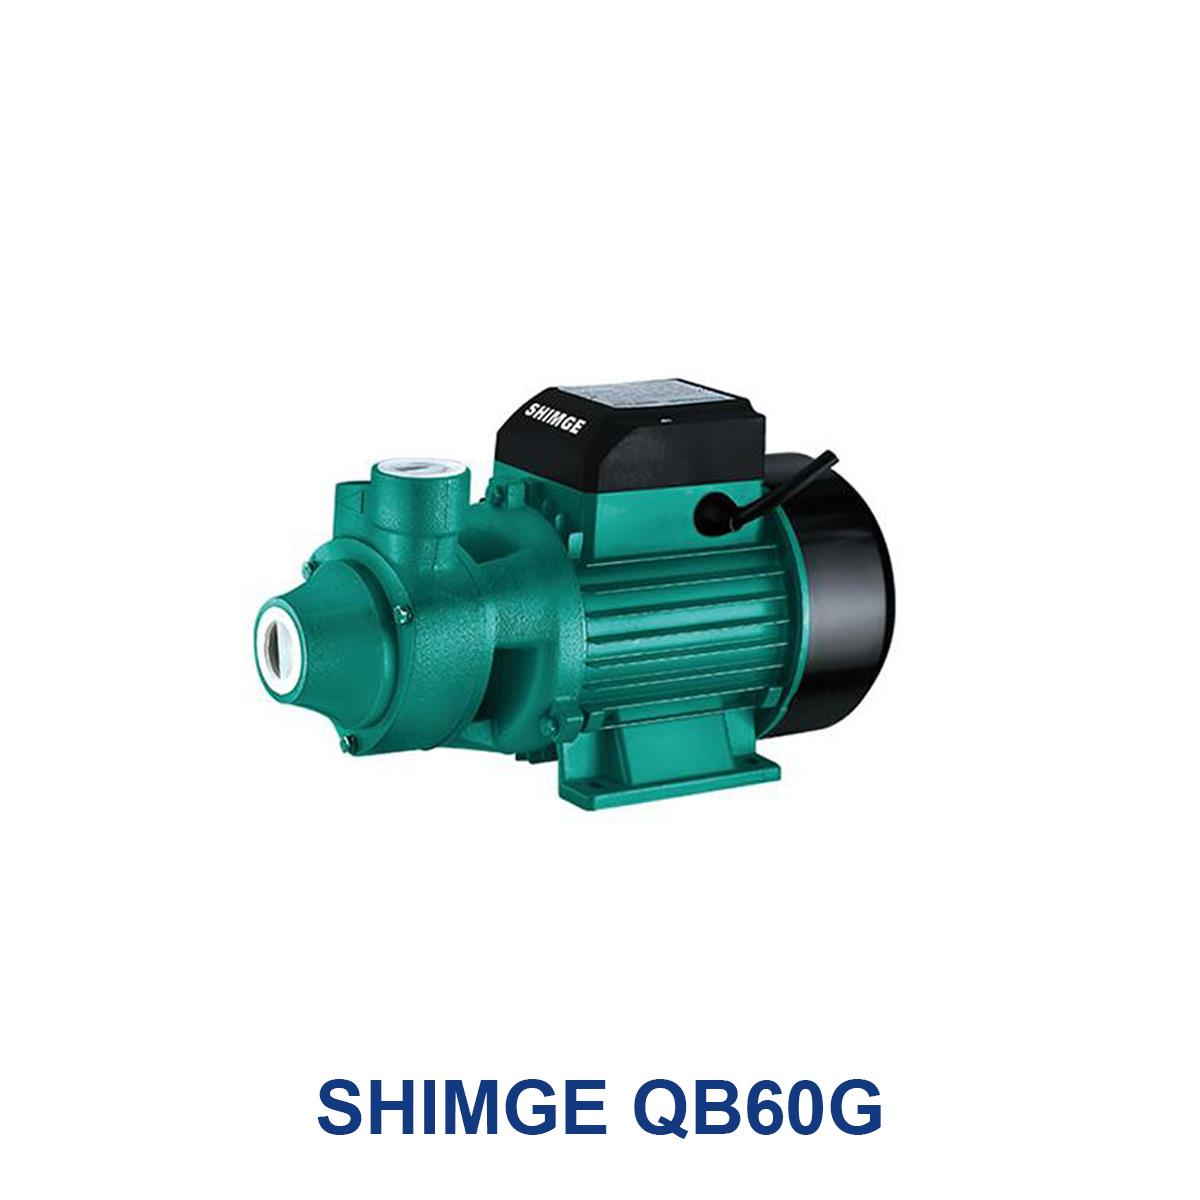 SHIMGE-QB60G